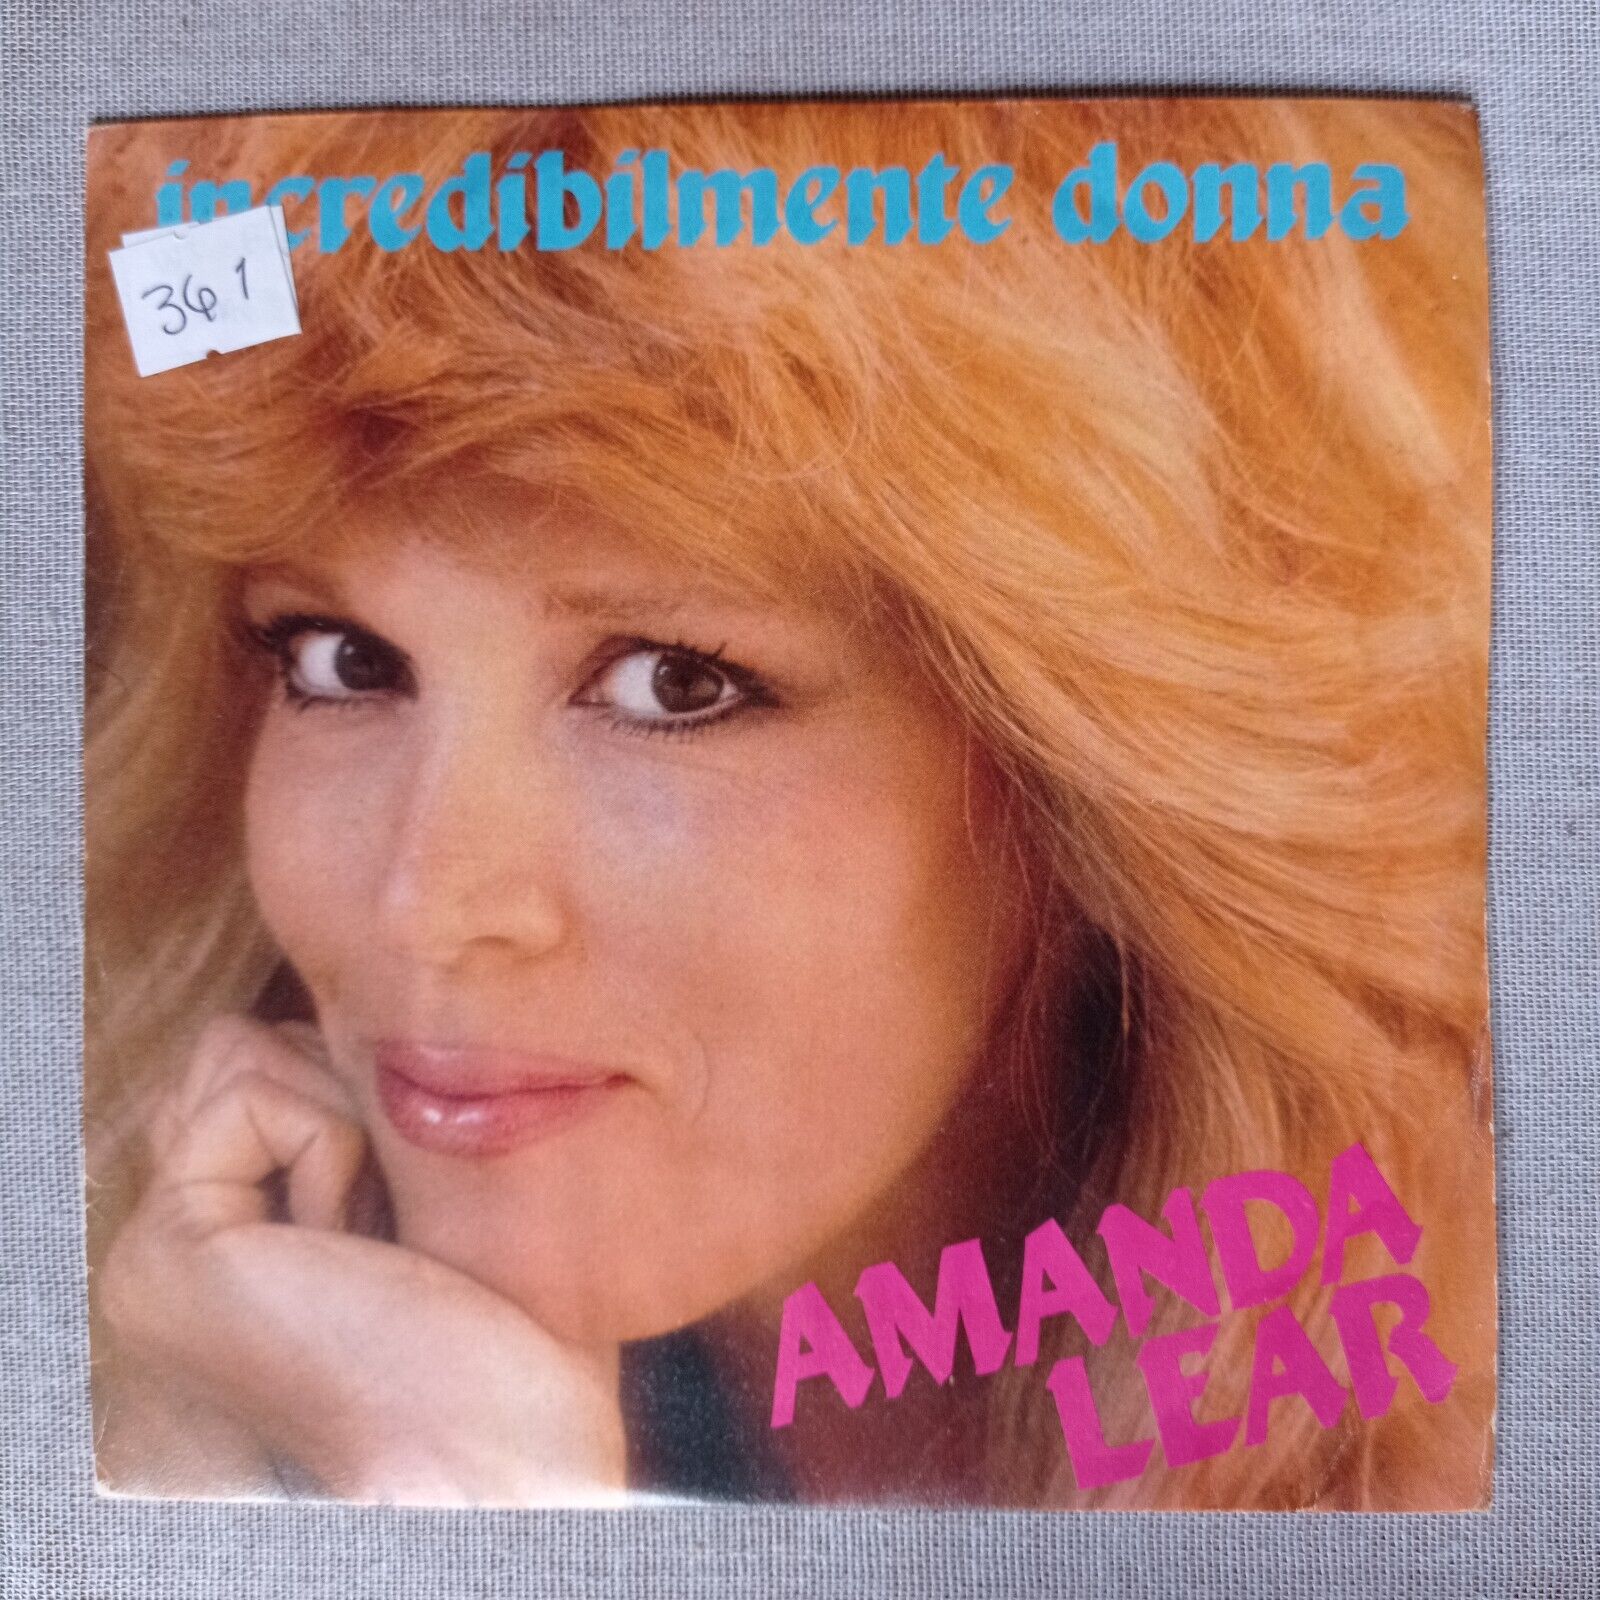 Amanda - Lear Incredibilmente Donna [1982] Vinyl 7" Single 45 RPM Italo Disco 